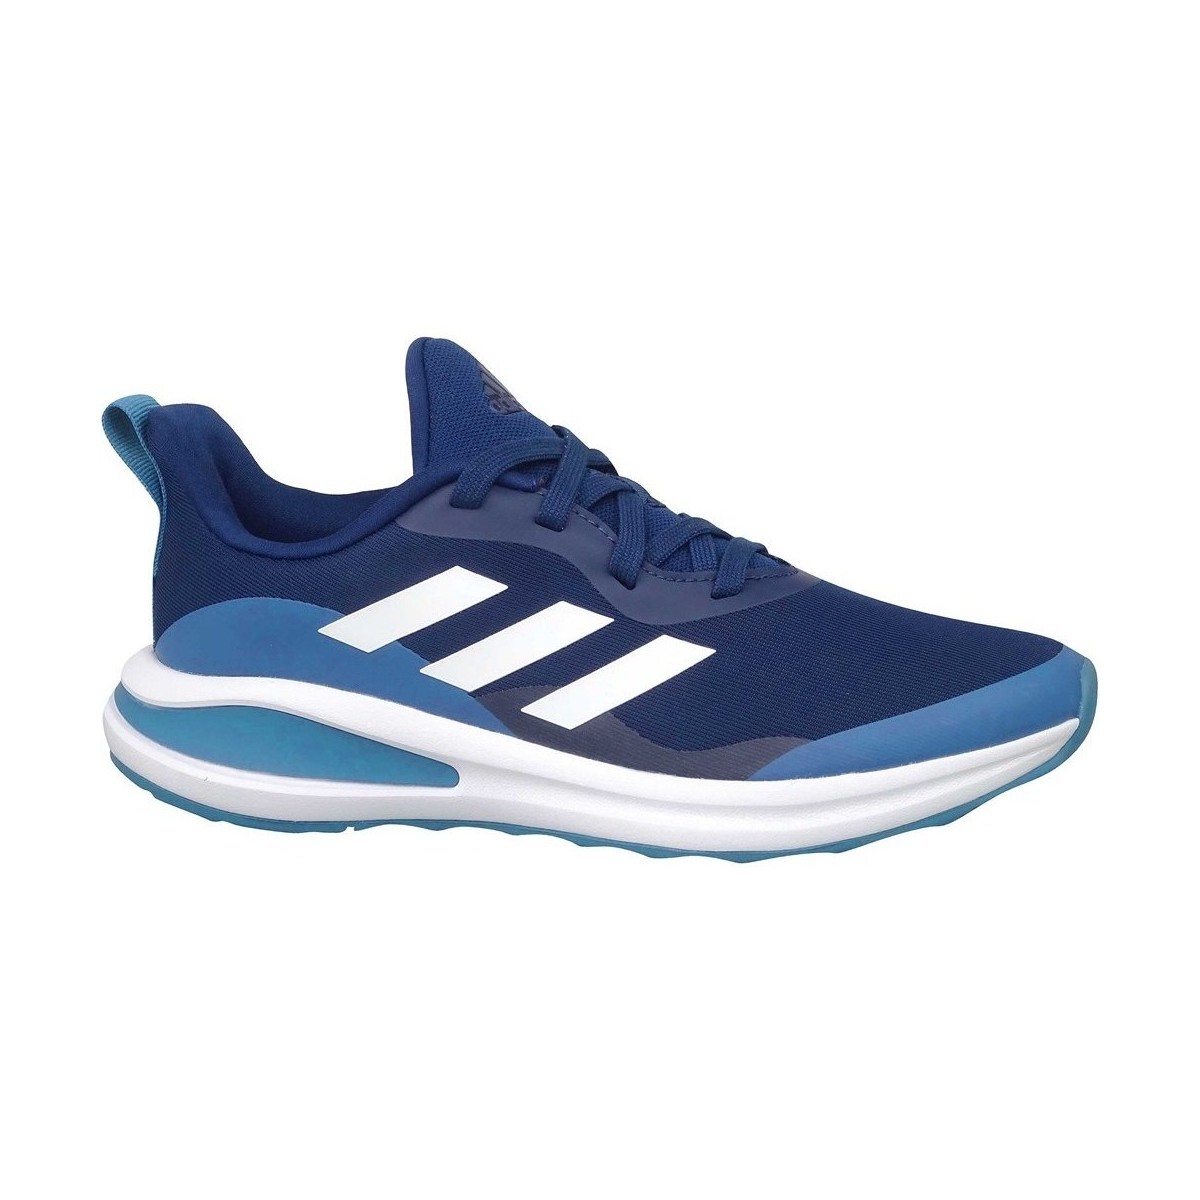 Boty Děti Běžecké / Krosové boty adidas Originals Fortarun K Tmavě modrá